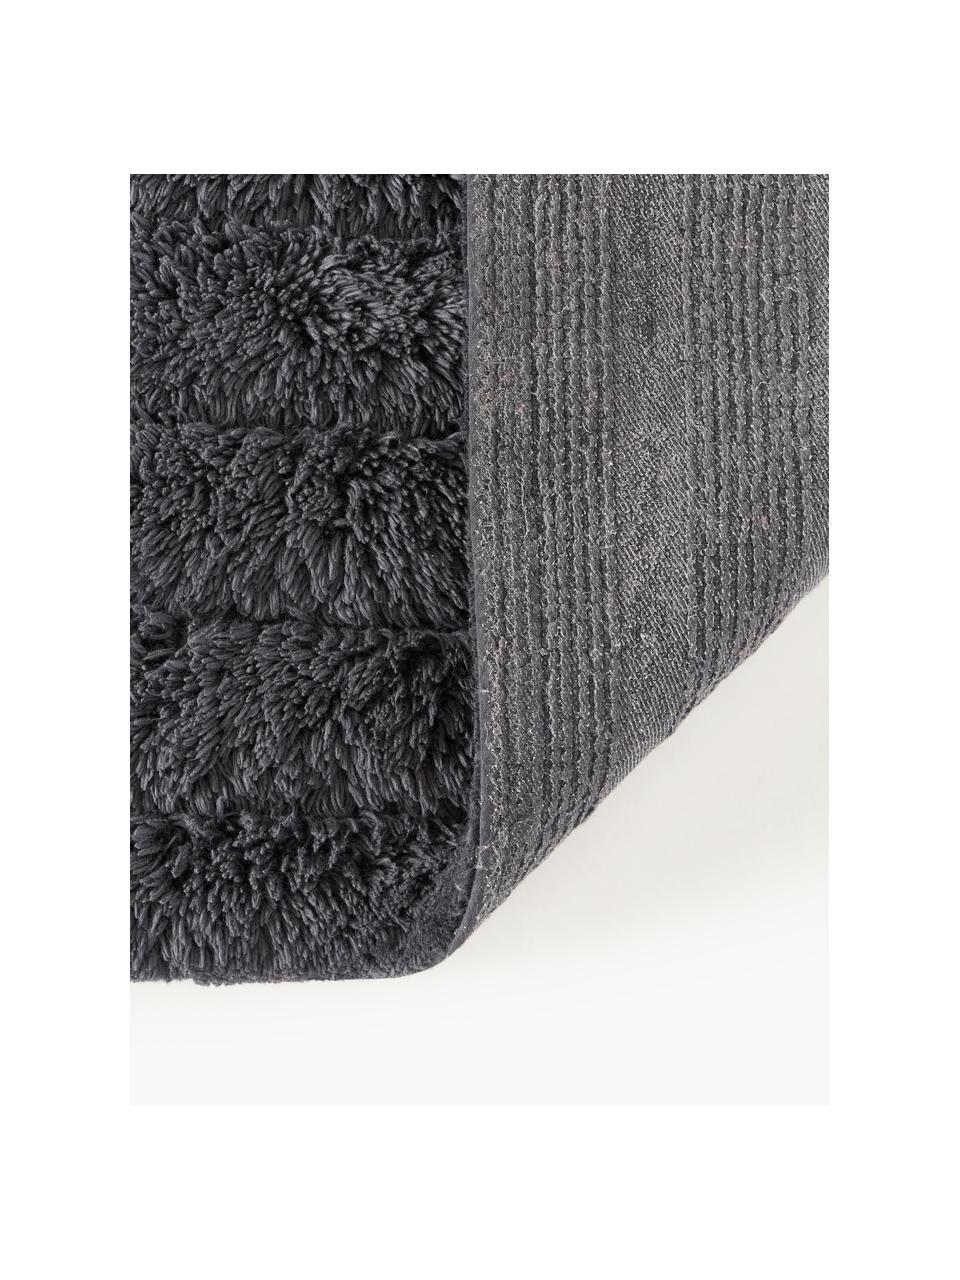 Puszysty dywanik łazienkowy Bailey, 100% bawełna

Ten produkt został przetestowany pod kątem substancji szkodliwych i certyfikowany zgodnie z STANDARD 100 by OEKO-TEX®21.HIN.45298 HOHENSTEIN HTTI, Antracytowy, S 60 x D 90 cm